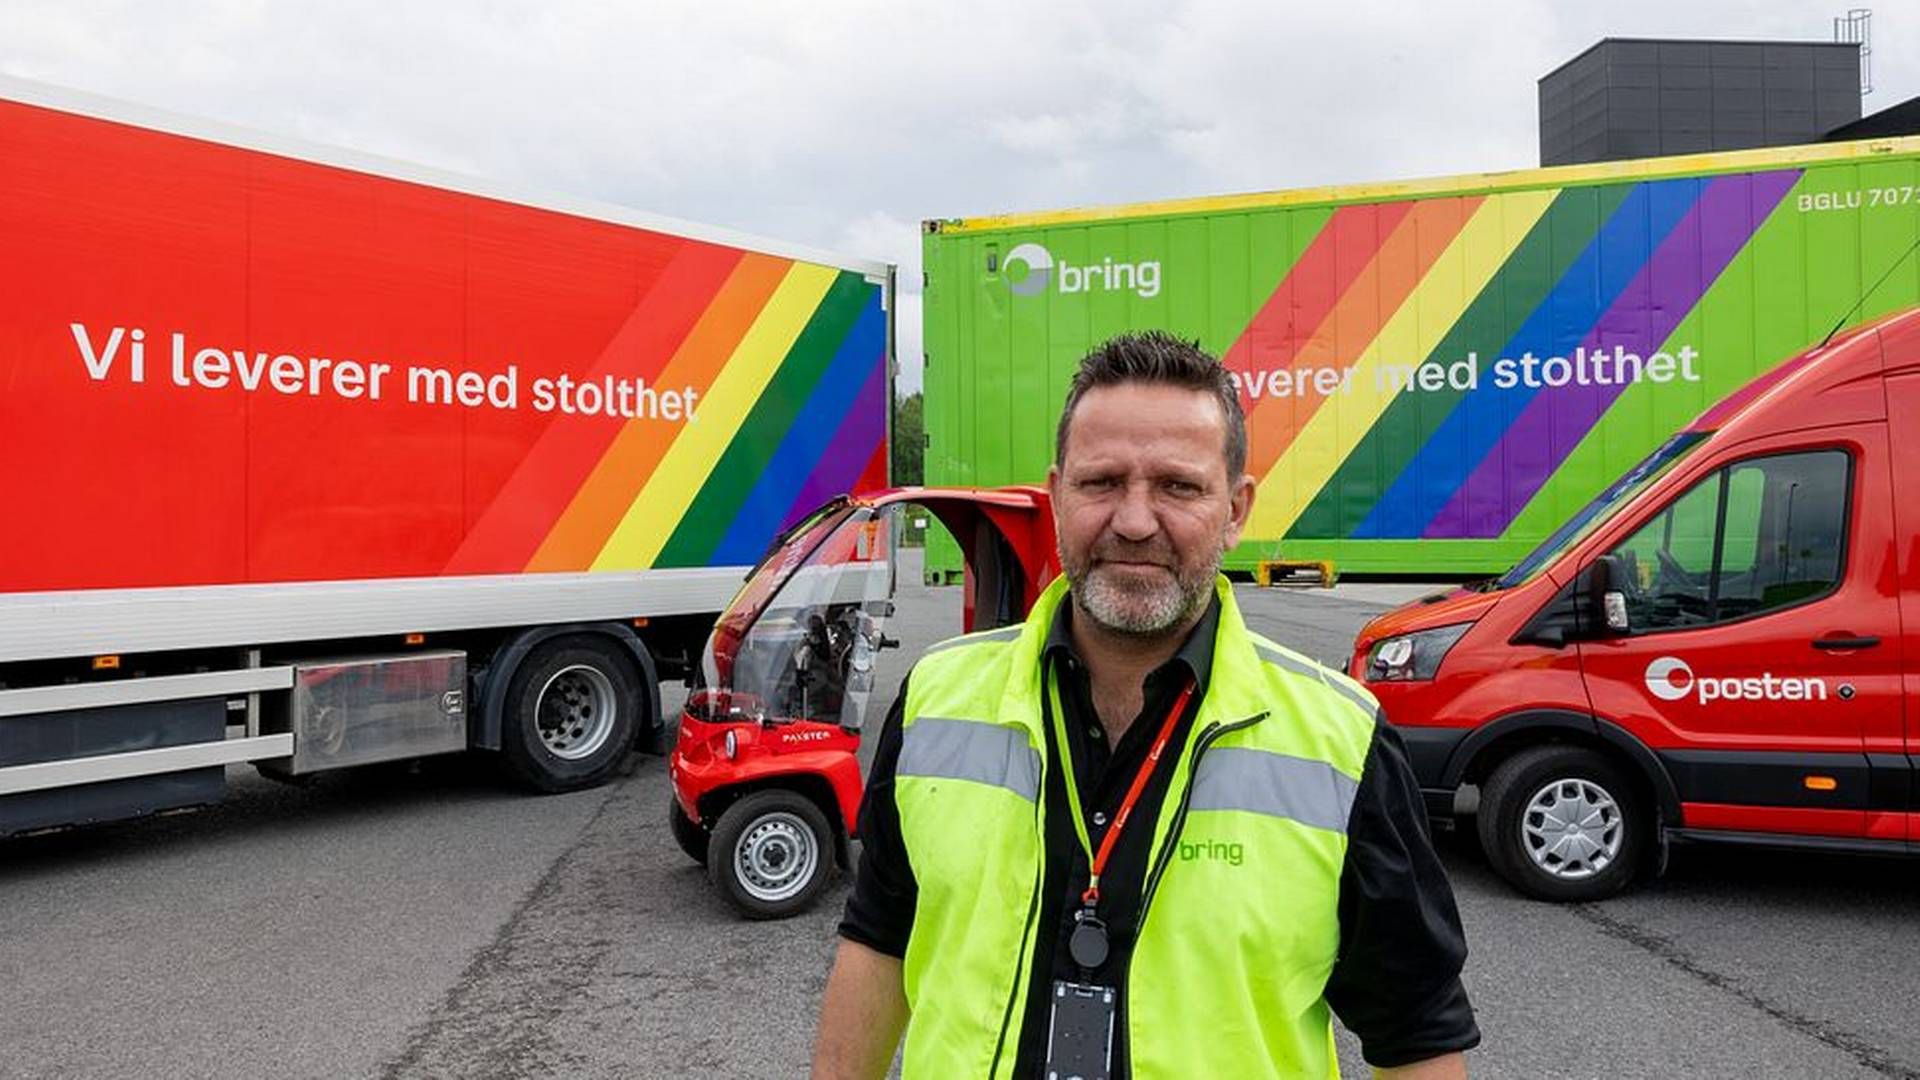 VISUELL ENDRING: Posten Bring markerer mangfold og kjærlighet med regnbuefarger på flere kjøretøy, forteller konserndirektør Hans-Øyvind Ryen i Posten Bring. | Foto: Posten Bring/PM